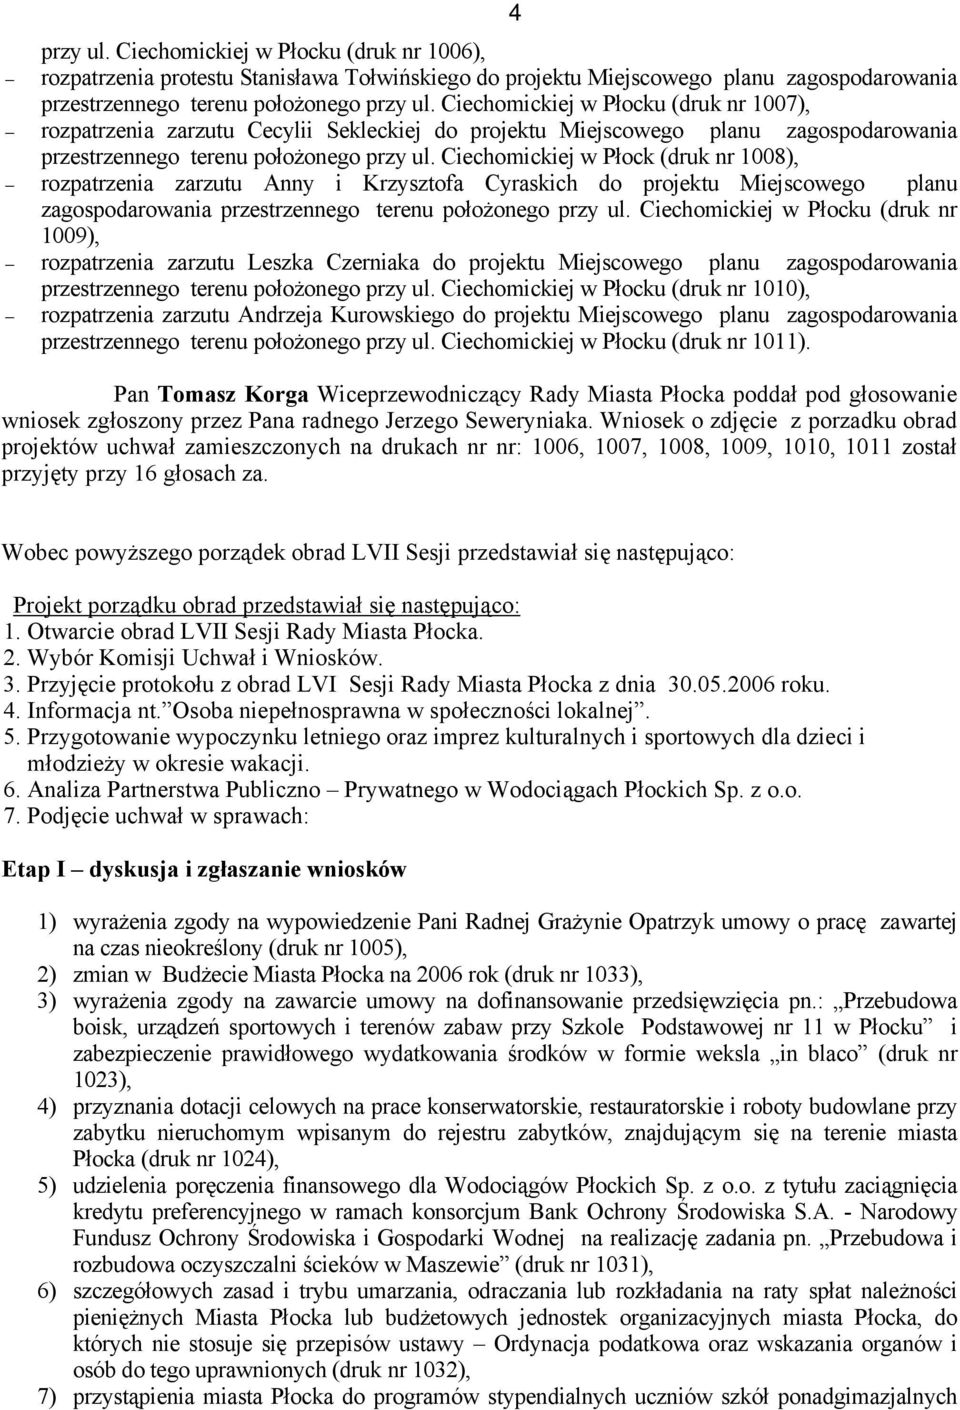 Ciechomickiej w Płock (druk nr 1008), rozpatrzenia zarzutu Anny i Krzysztofa Cyraskich do projektu Miejscowego planu zagospodarowania przestrzennego terenu położonego przy ul.